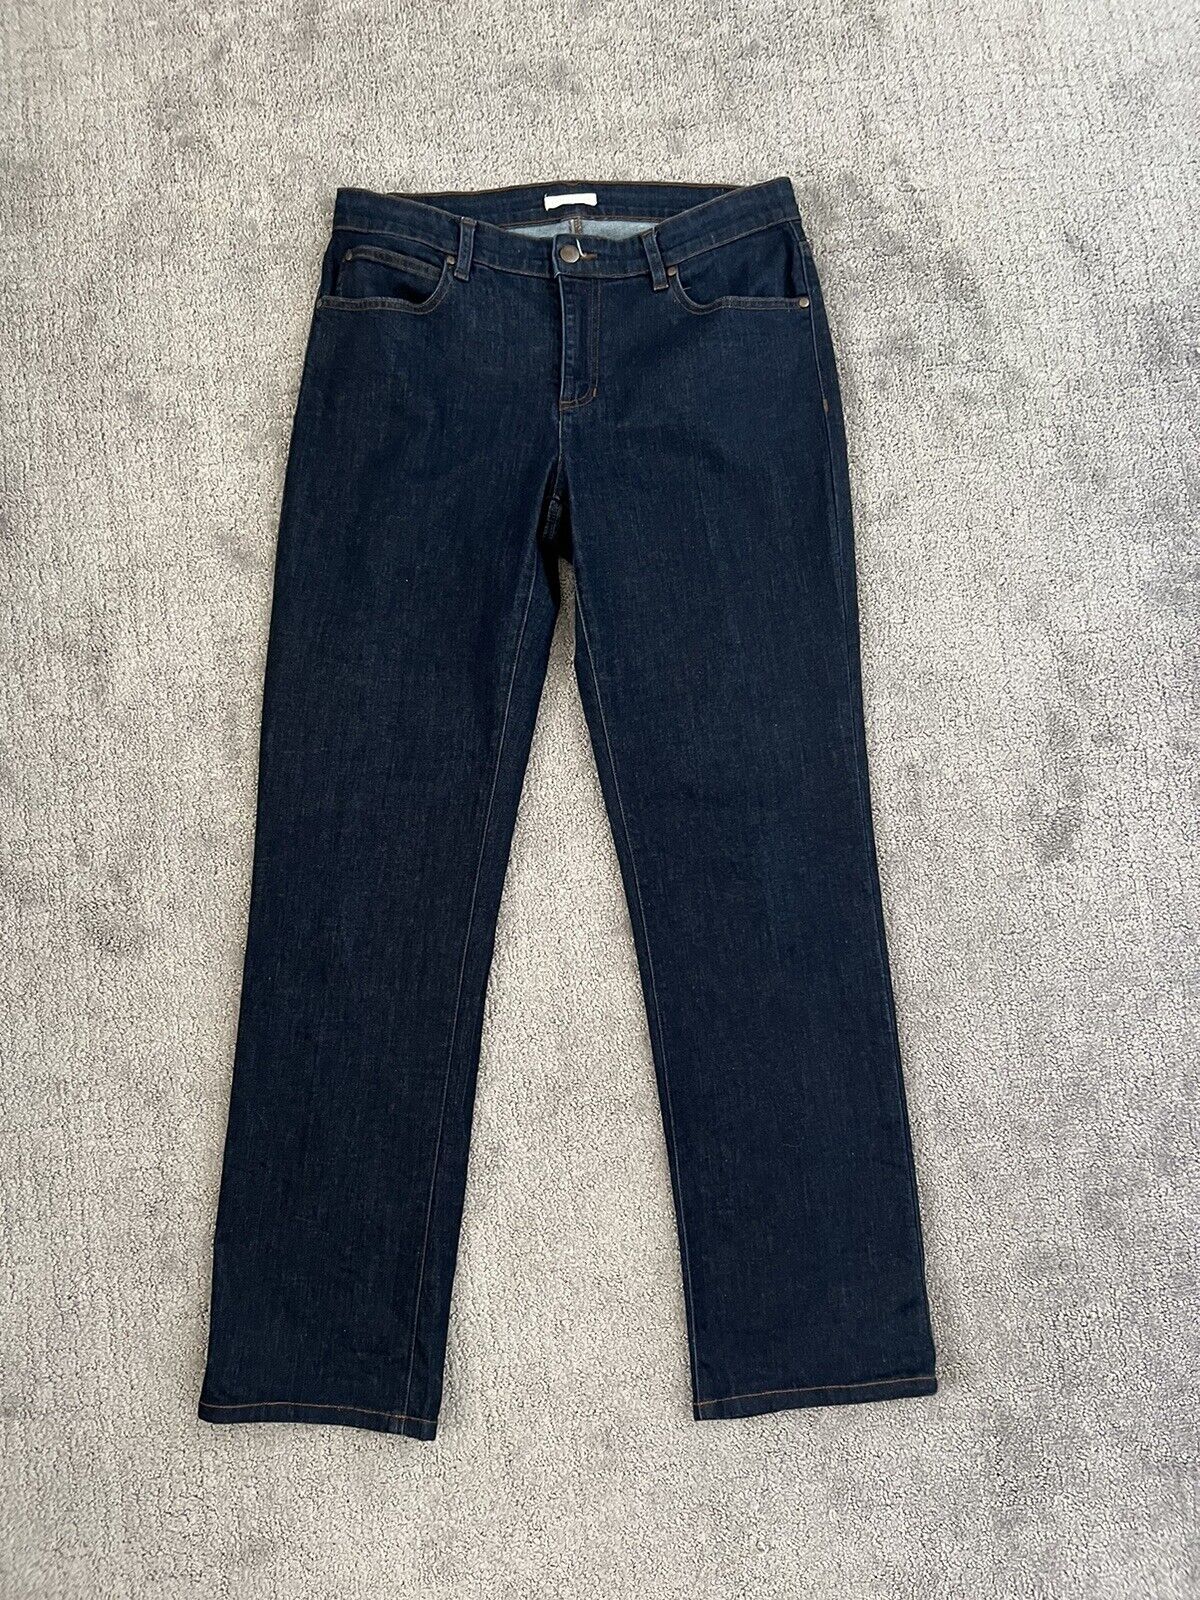 Eileen Fisher Straight Leg Dark Wash Jeans 10 - image 1